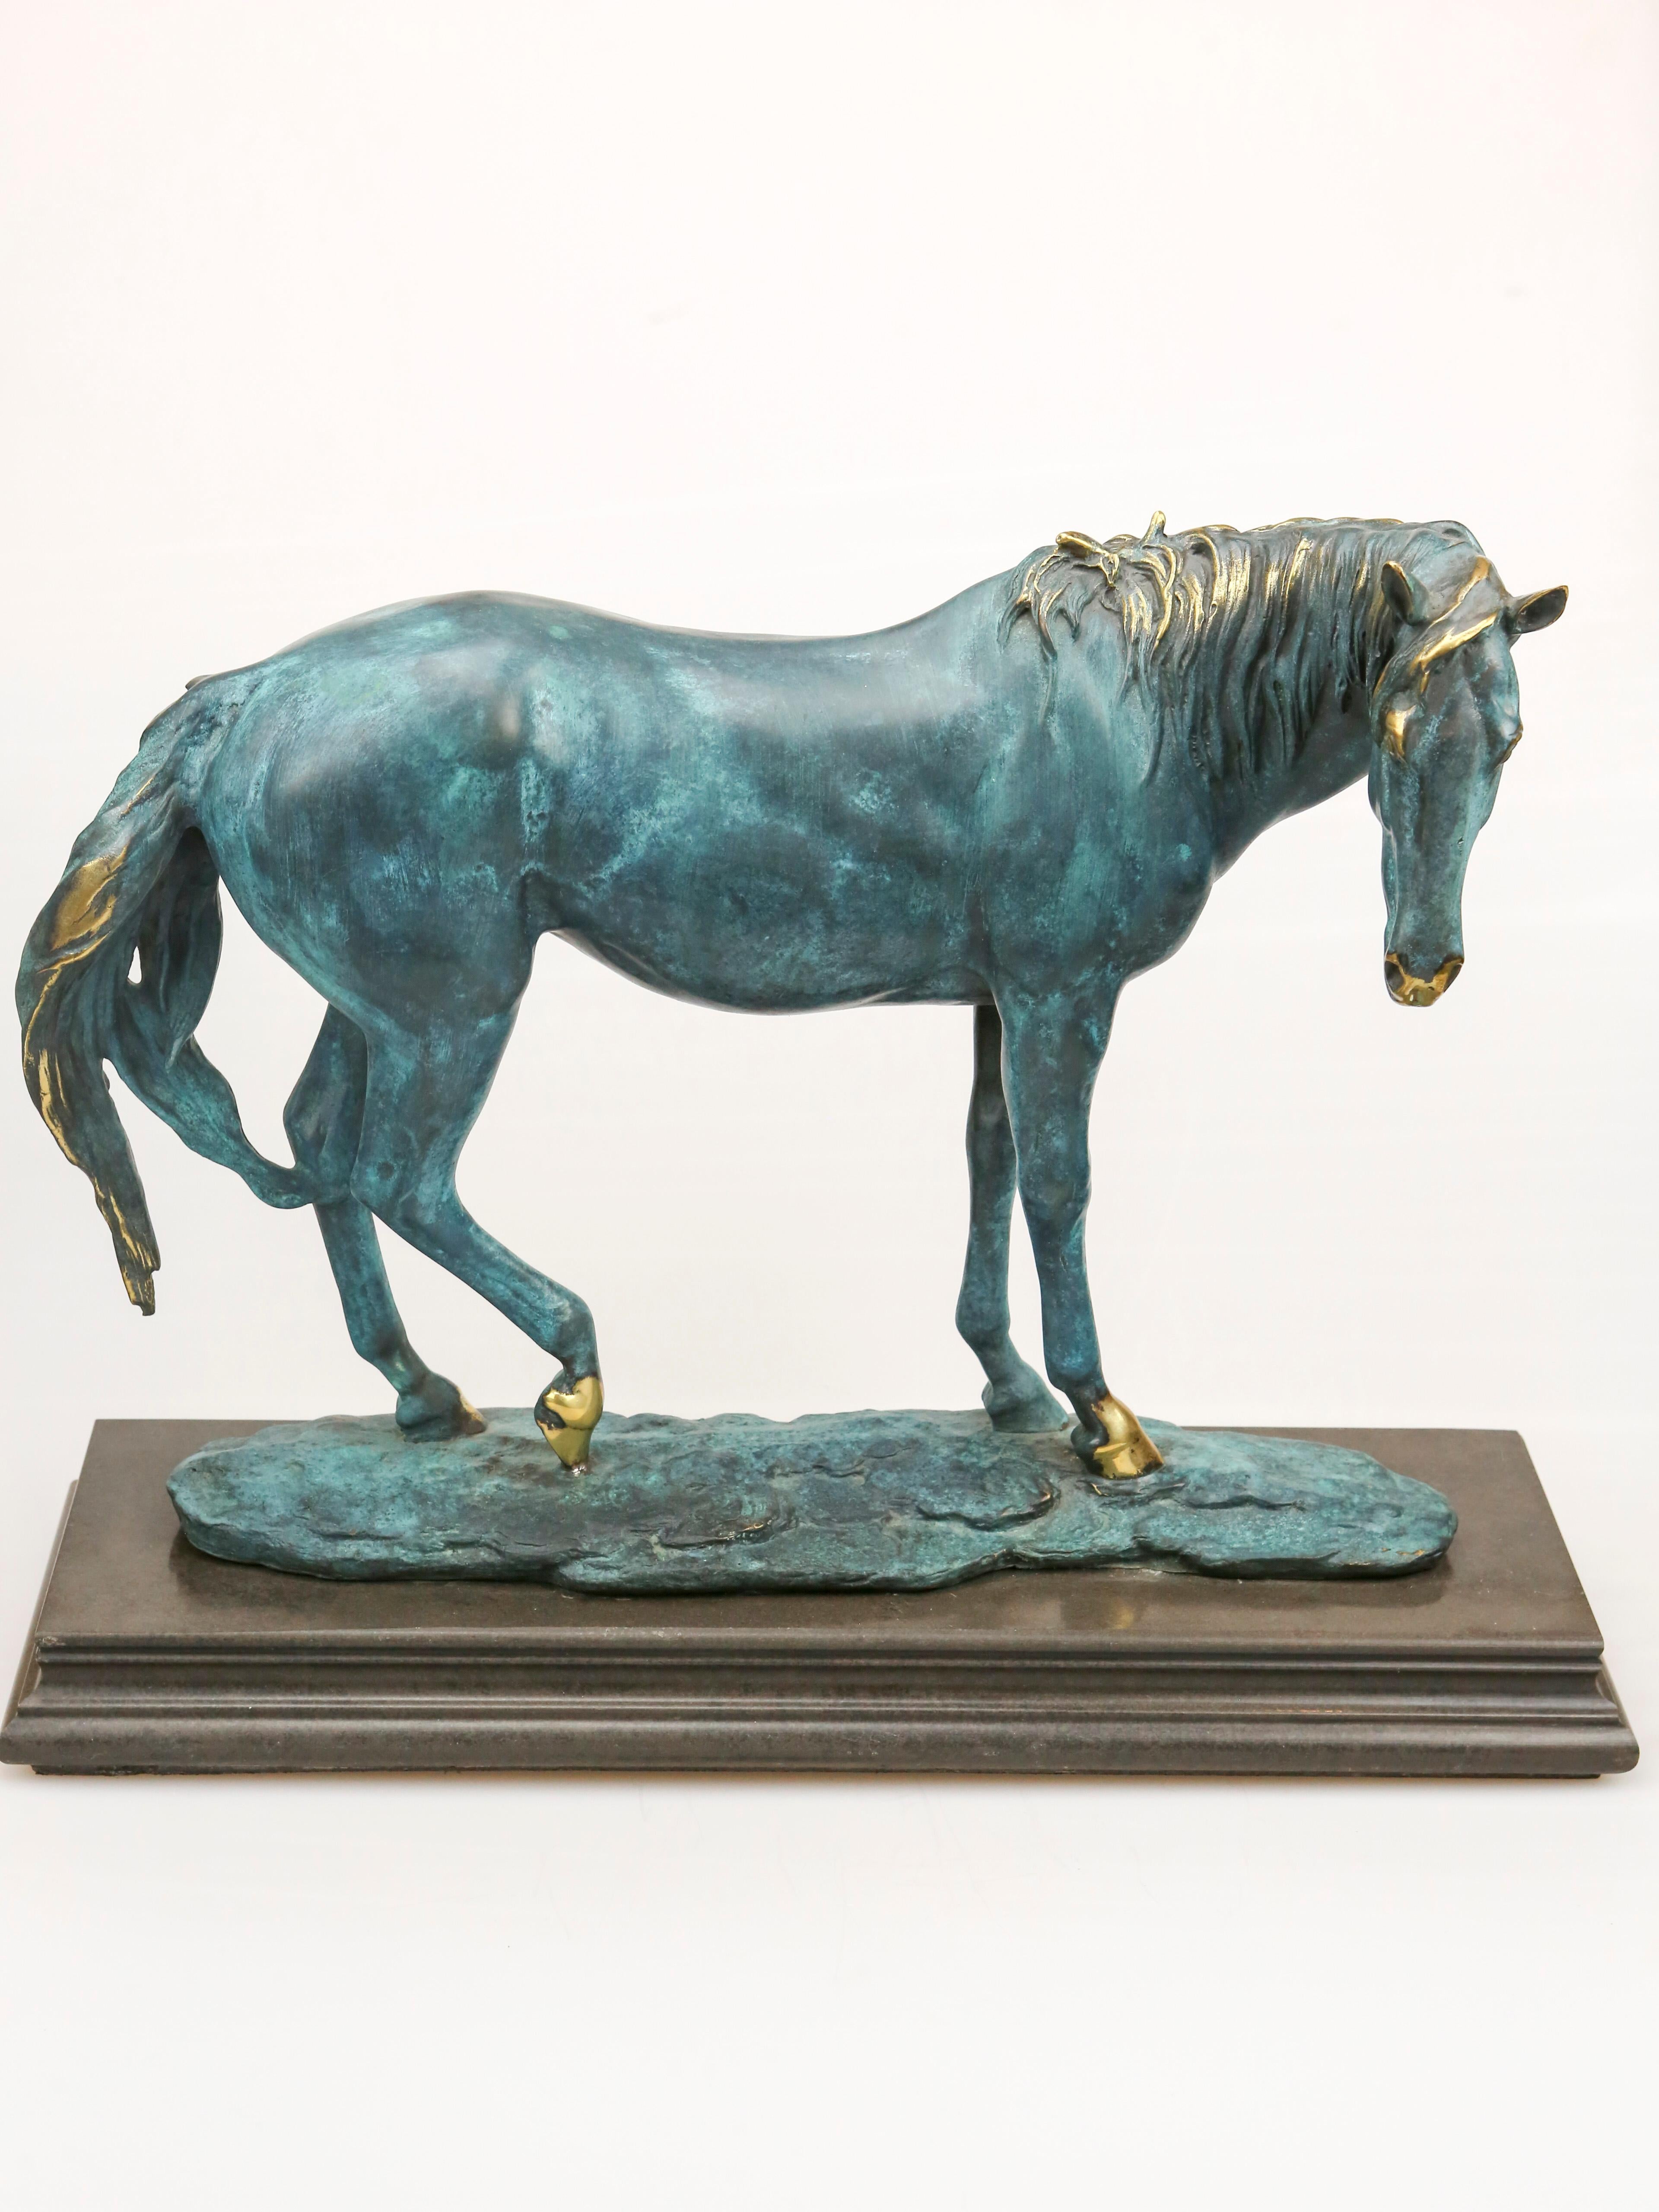 Sculpture de collection de trophée de cheval européen en bronze

Au service de l'homme dans les domaines de la guerre, de la mobilité, de la productivité, de l'agriculture et du développement en tous genres, le cheval est de loin l'un des plus